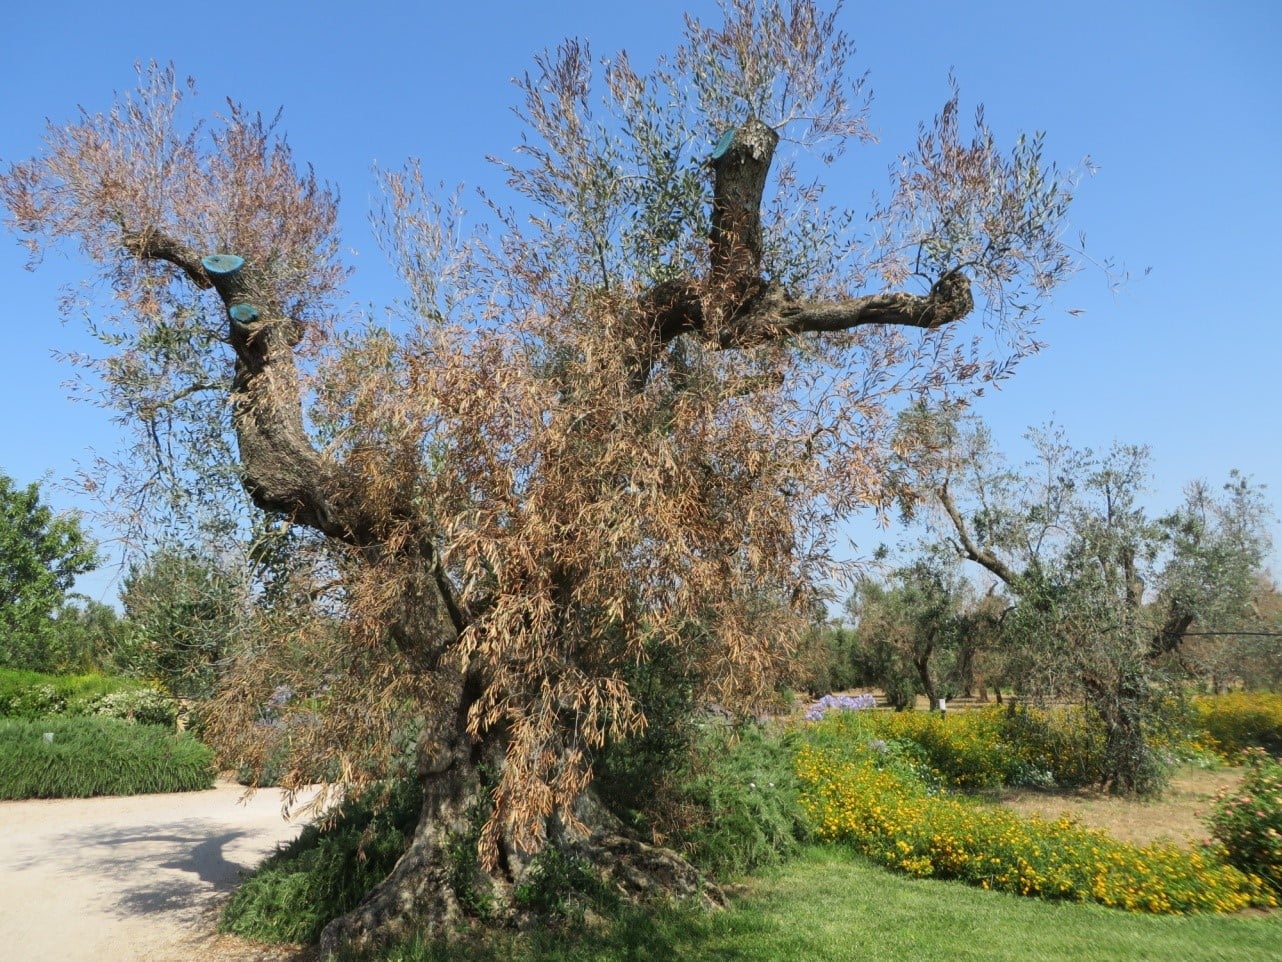 Complesso del disseccamento rapido dell’olivo (CoDiRo) causato da Xylella fastidiosa